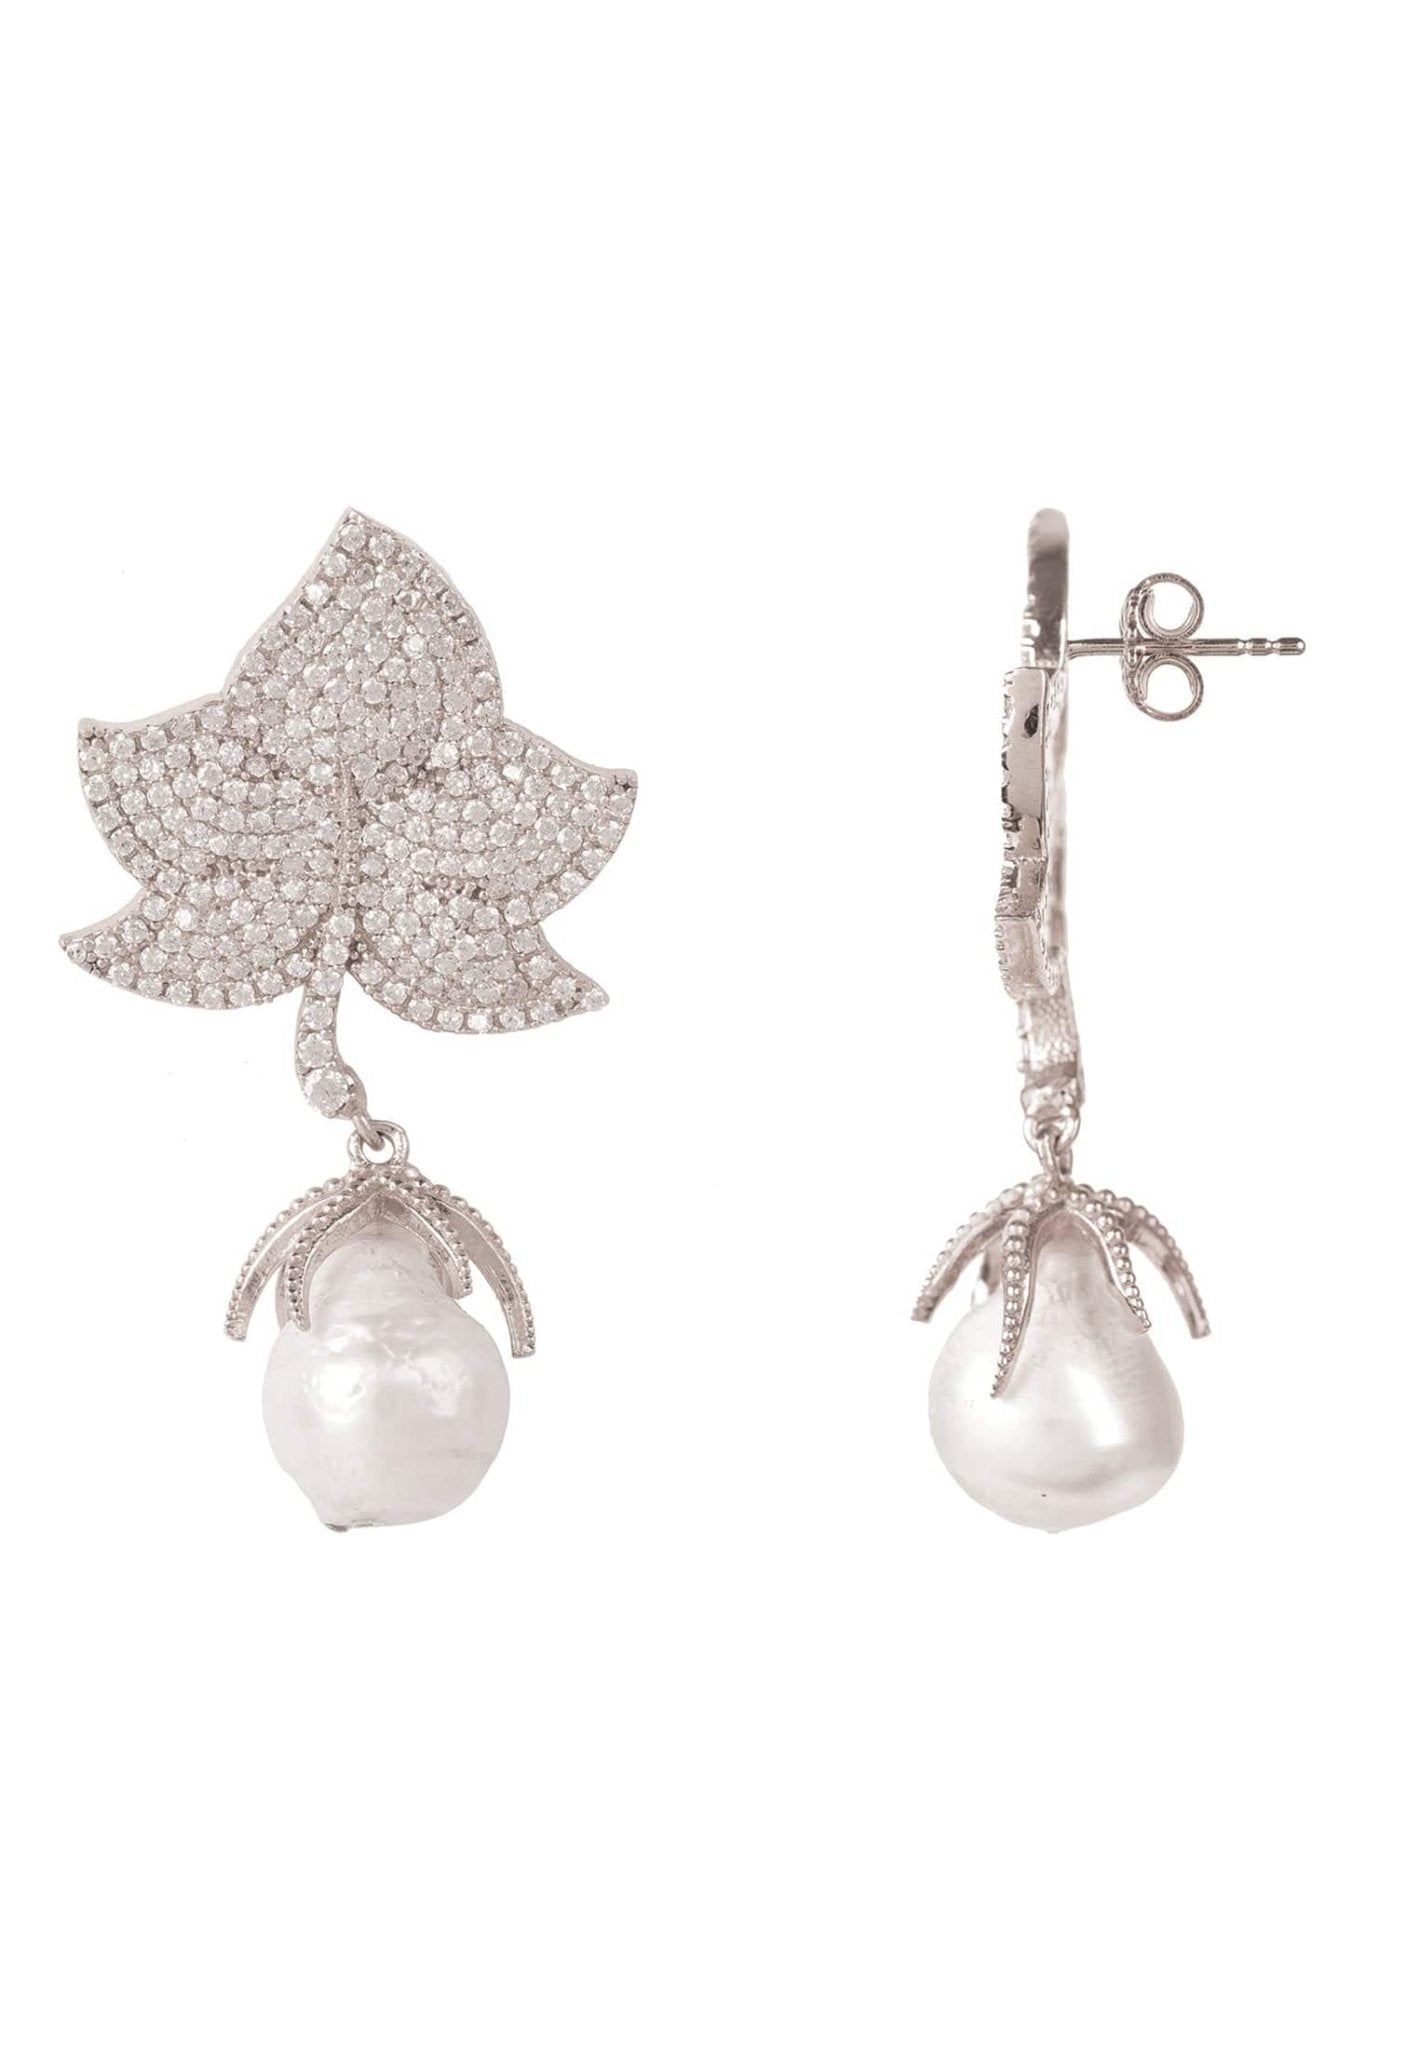 Baroque Pearl Leaf Earrings White Cz Silver - LATELITA Earrings